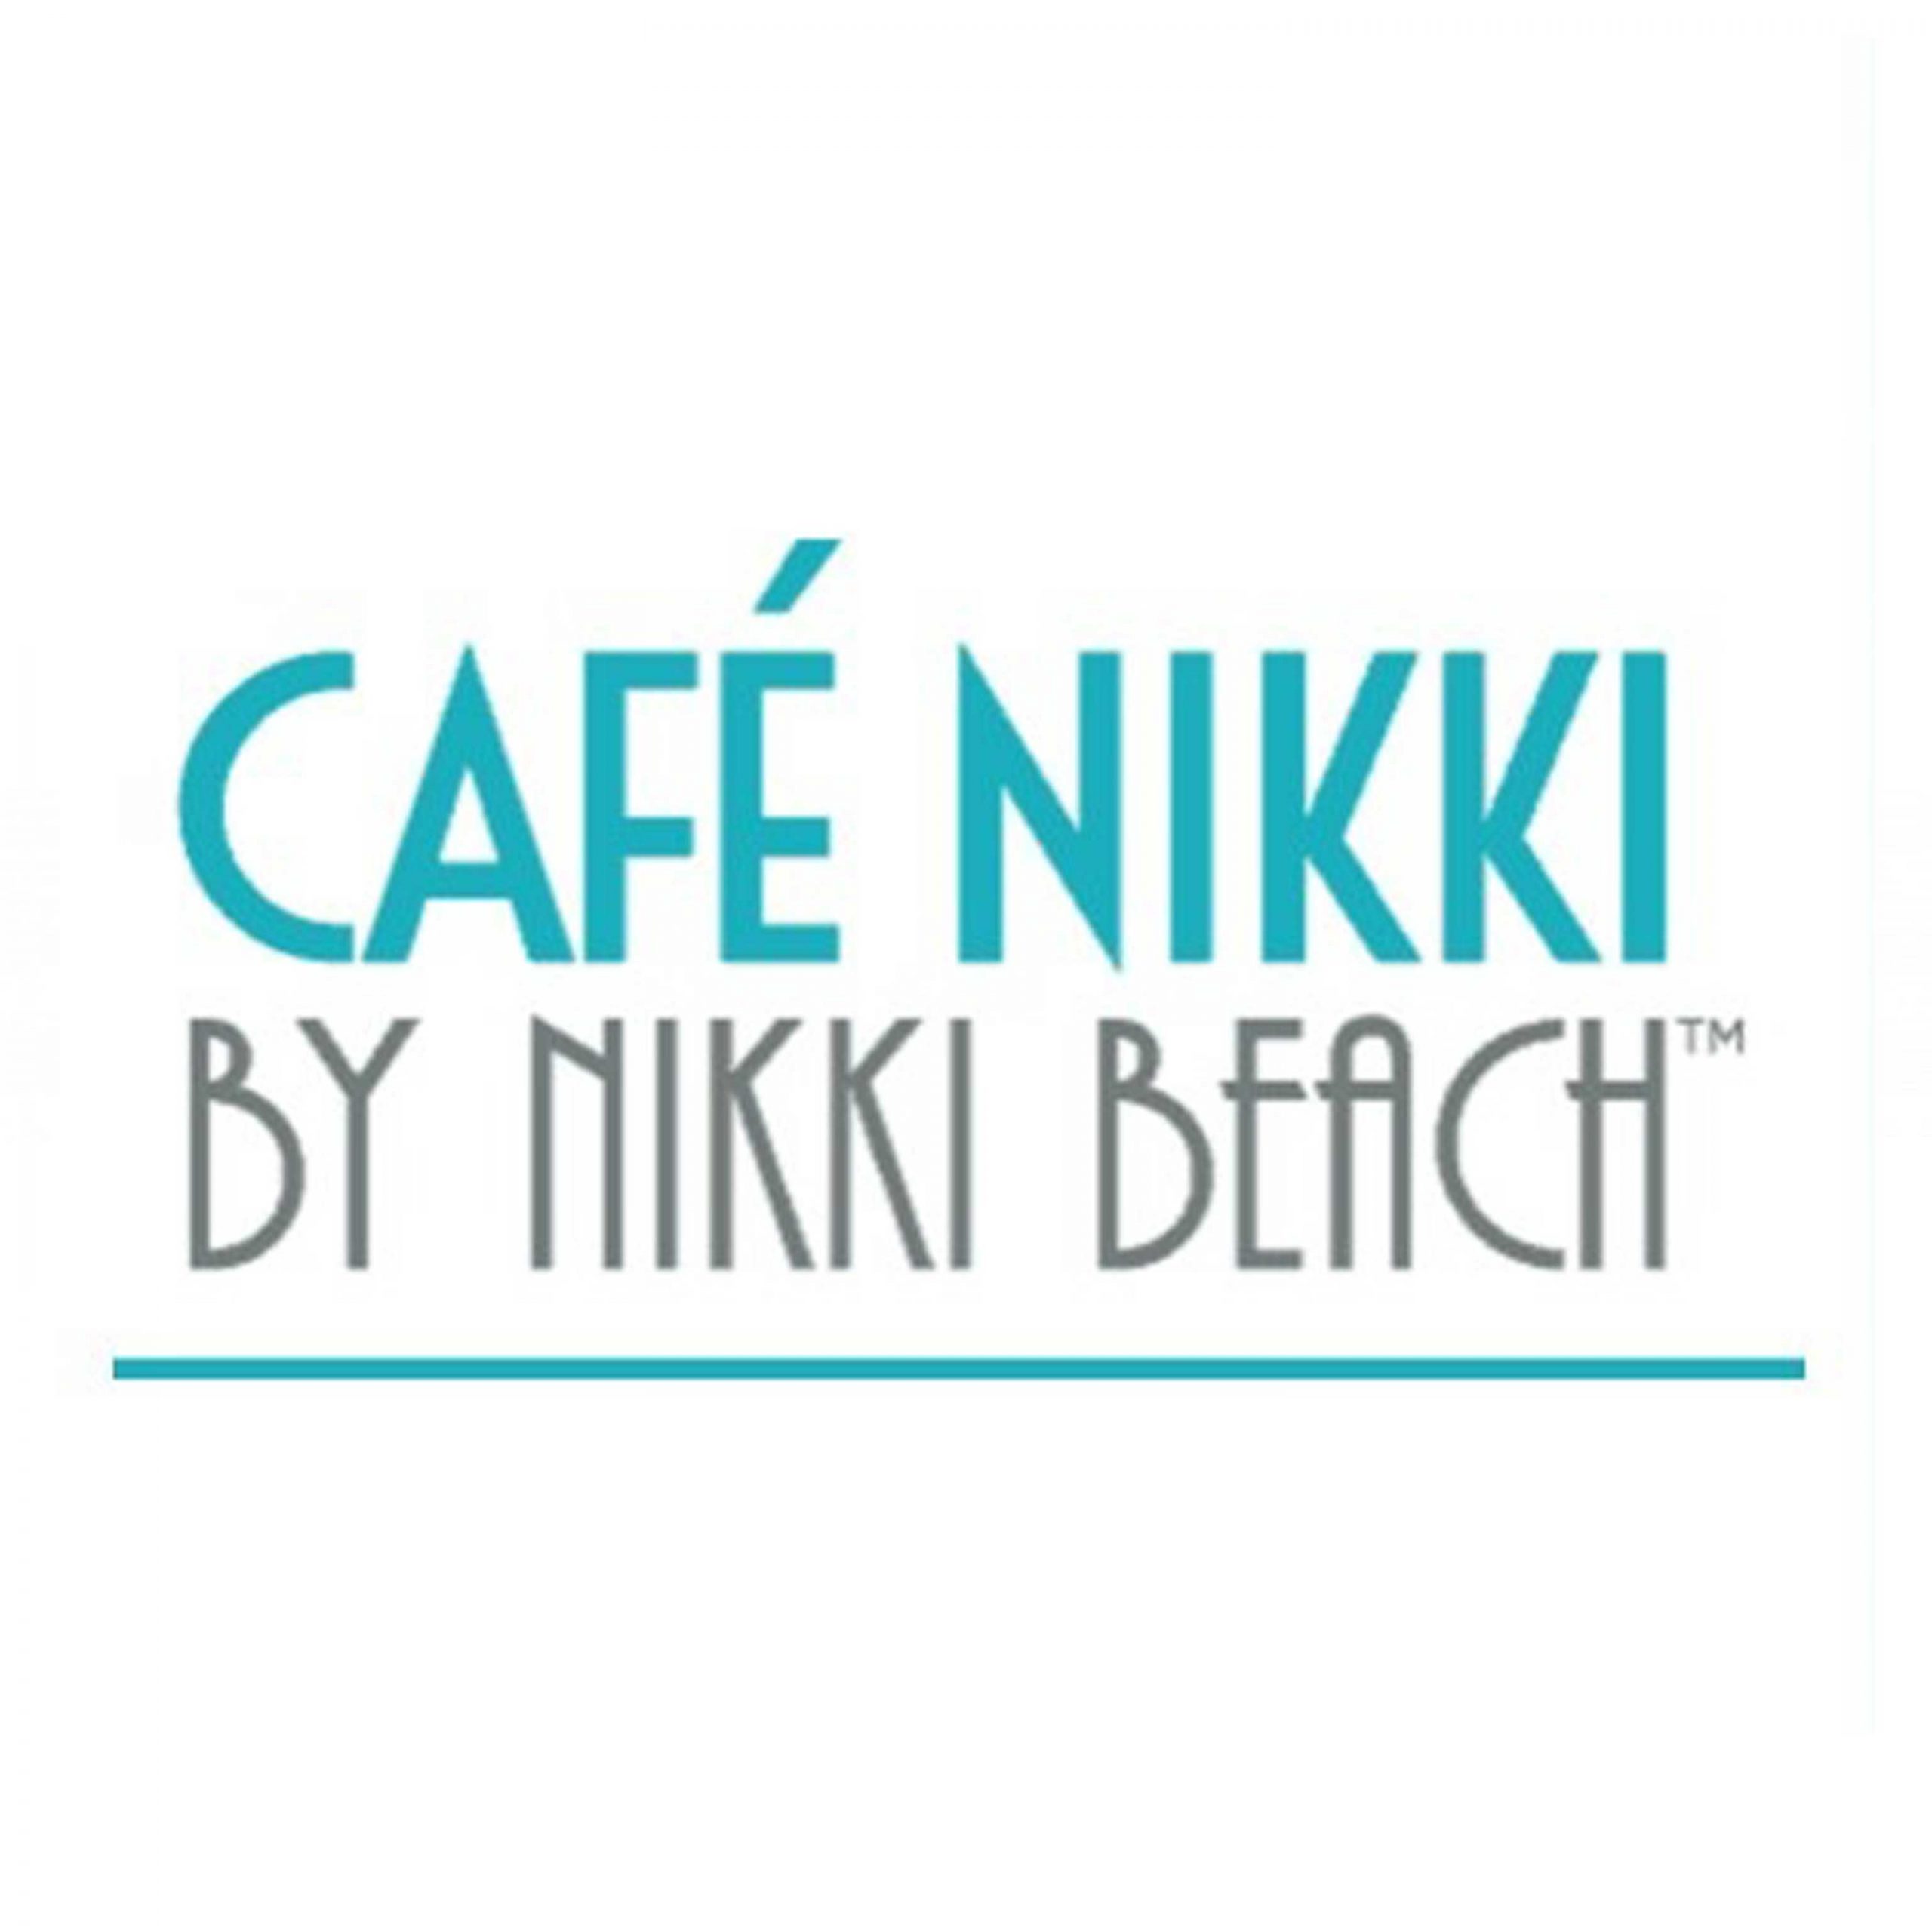 Cafe Nikki - Coming Soon in UAE